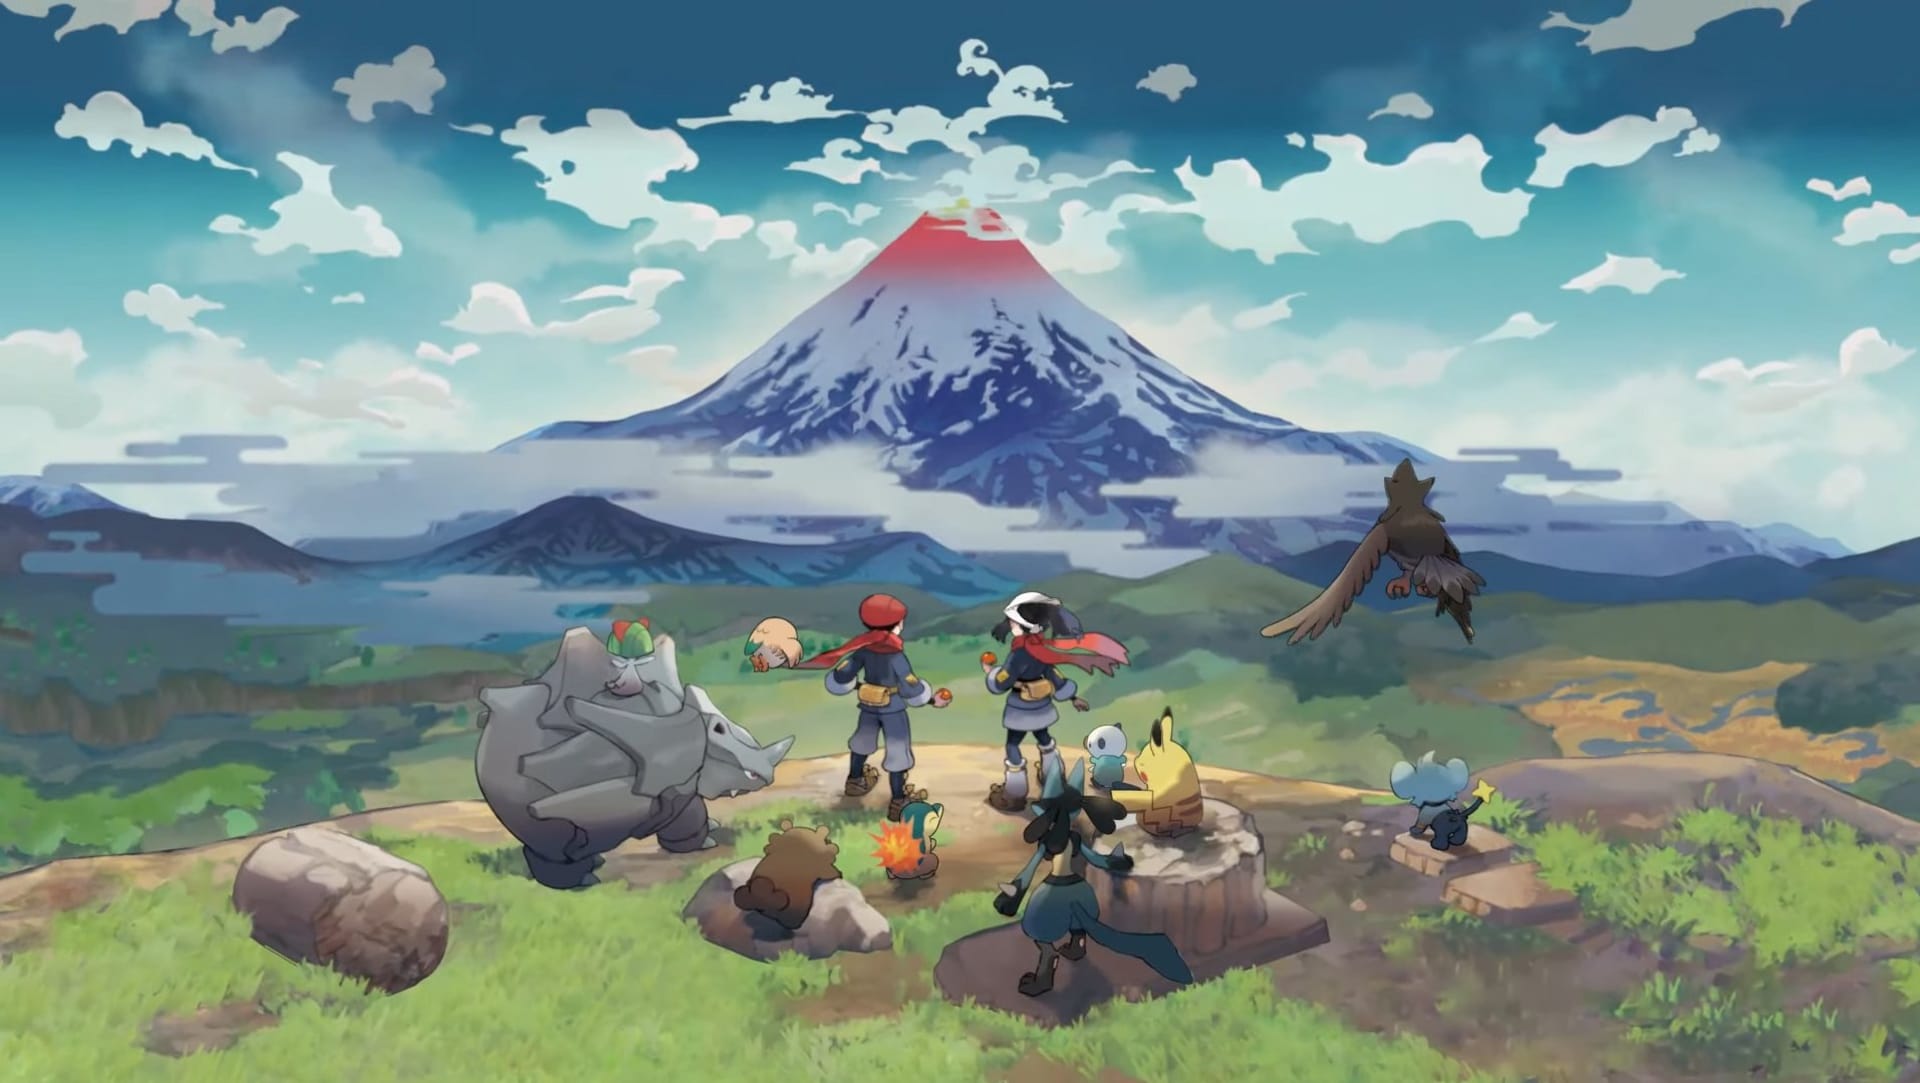 Stejně jako každý rok, i letos vyšla hra s japonskými příšerkami. Pokémon Legends: Arceus v recenzích zabodoval.